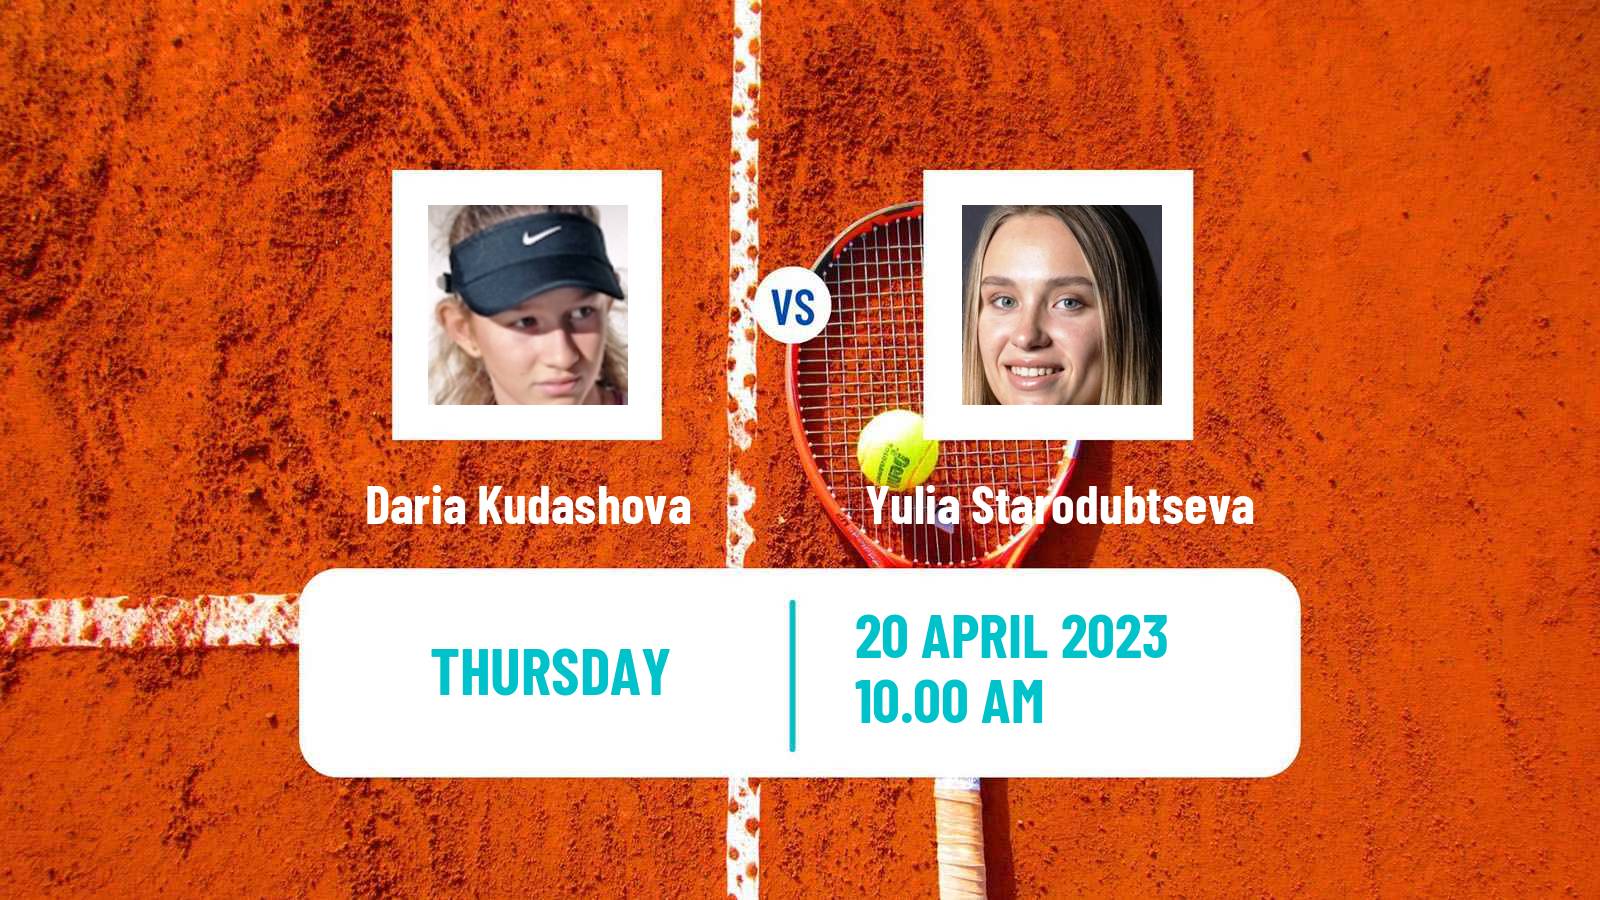 Tennis ITF Tournaments Daria Kudashova - Yulia Starodubtseva